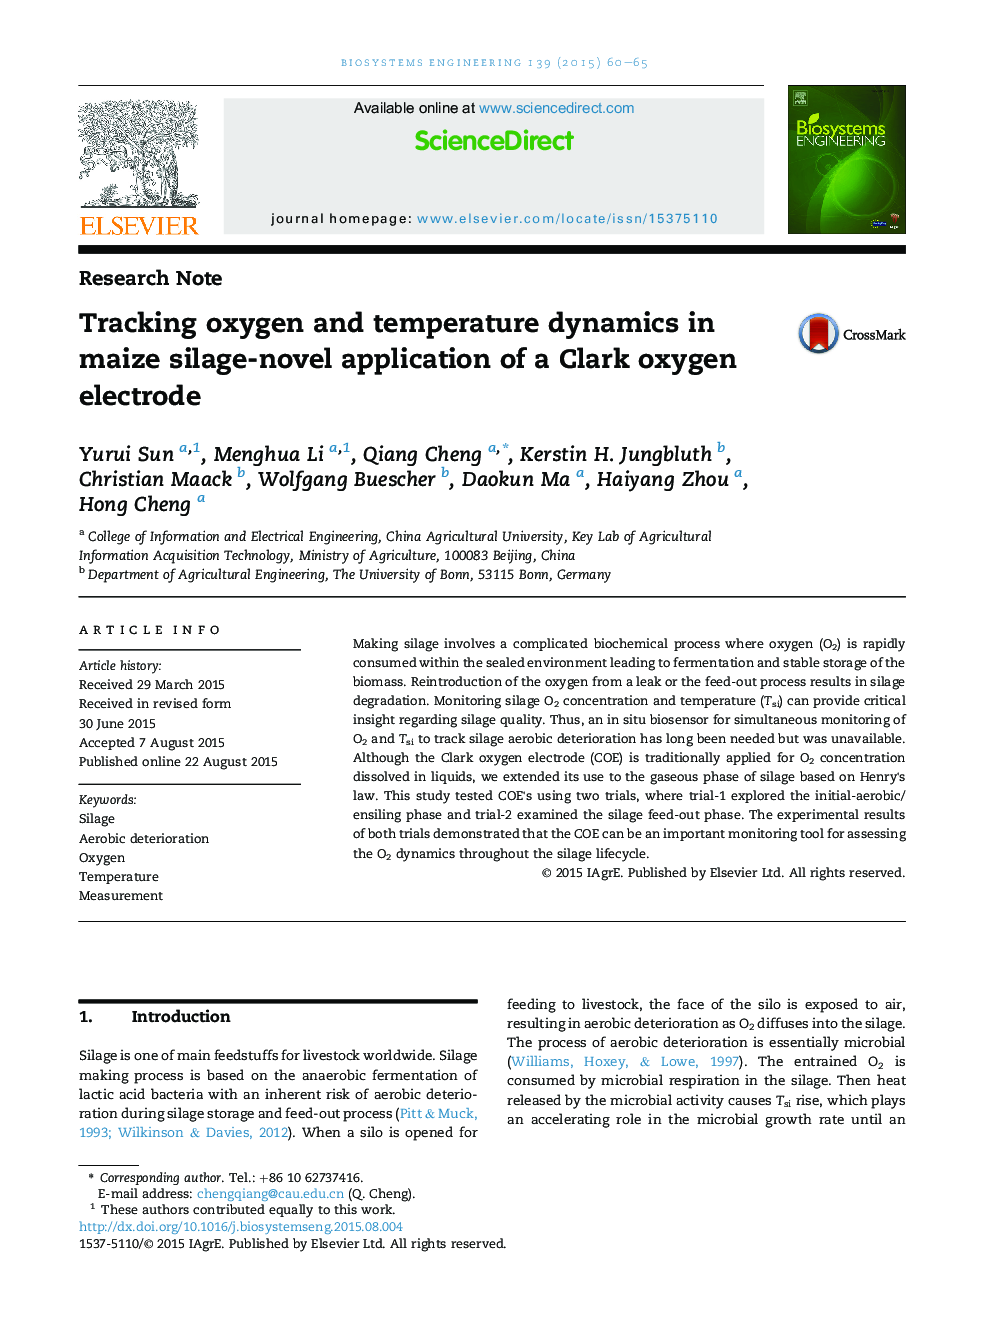 ردیابی دینامیک اکسیژن و دما در سیلوهای ذرت - استفاده جدید از یک الکترود اکسیژن کلارک 